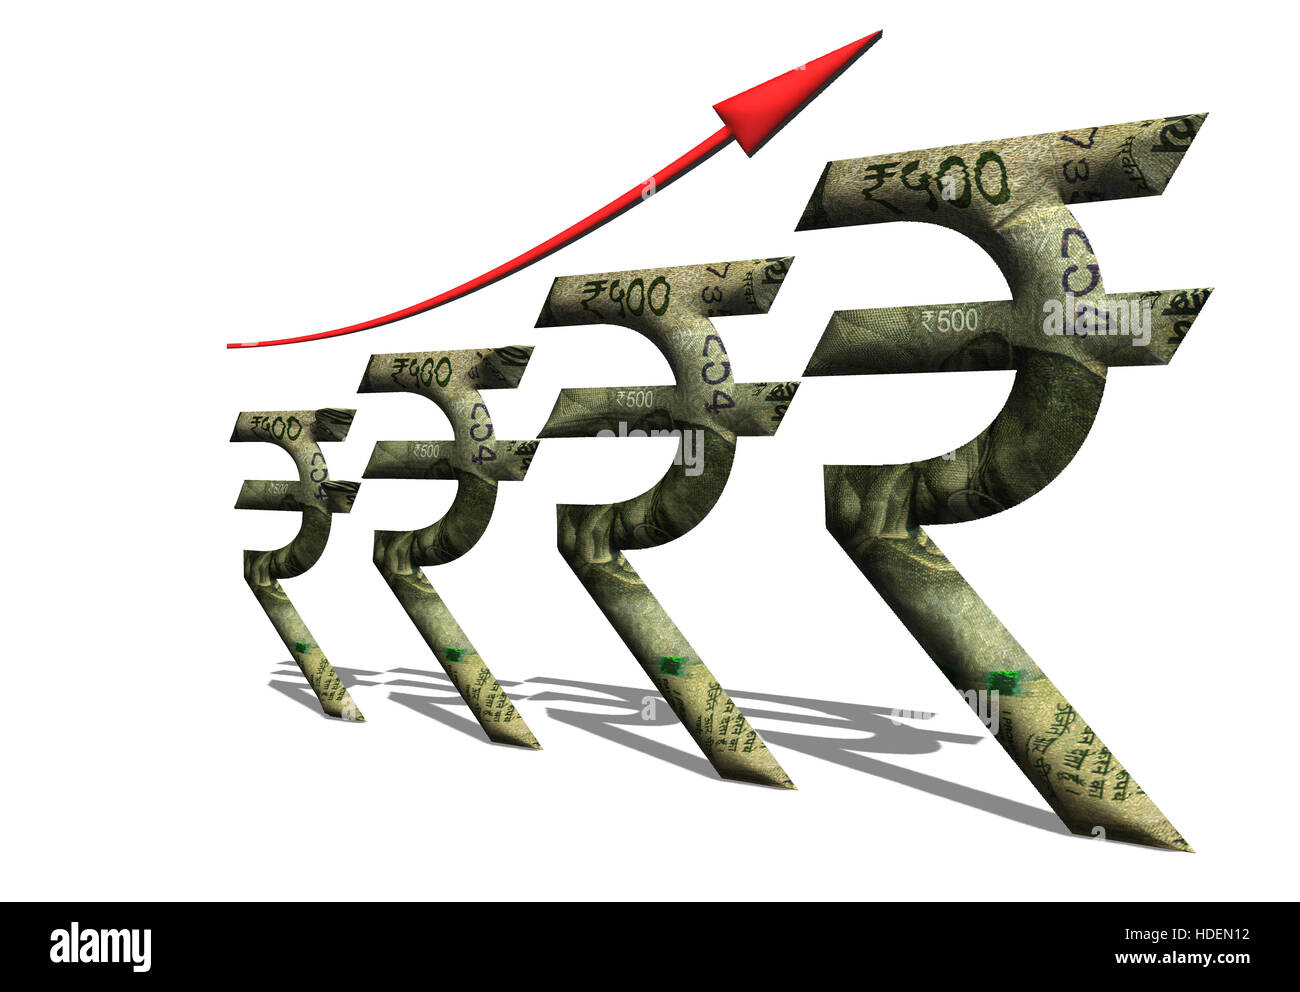 Una illustrazione che mostra la crescita economica attraverso il rupee simbolo con 500 rupee nota inset in il rupee simbolo. Foto Stock